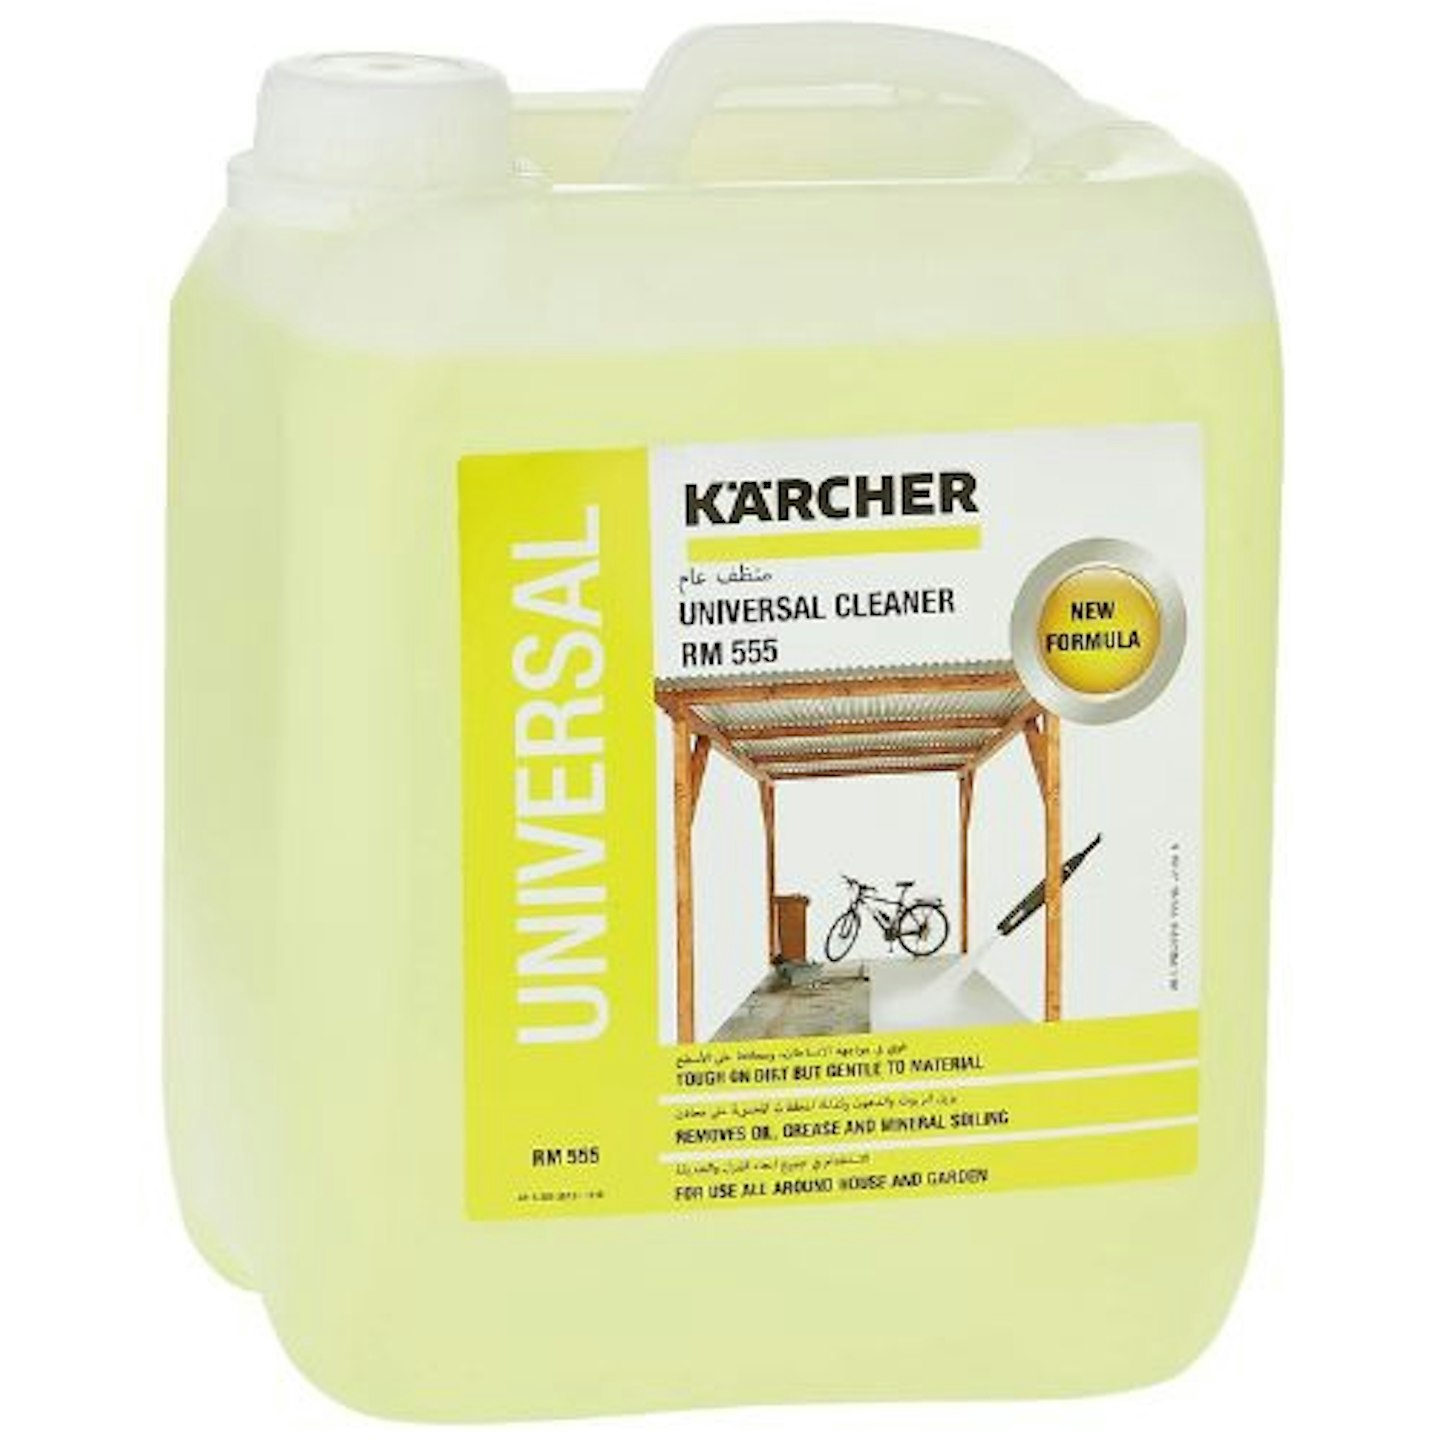 Karcher Canister Pressure Washer Detergent